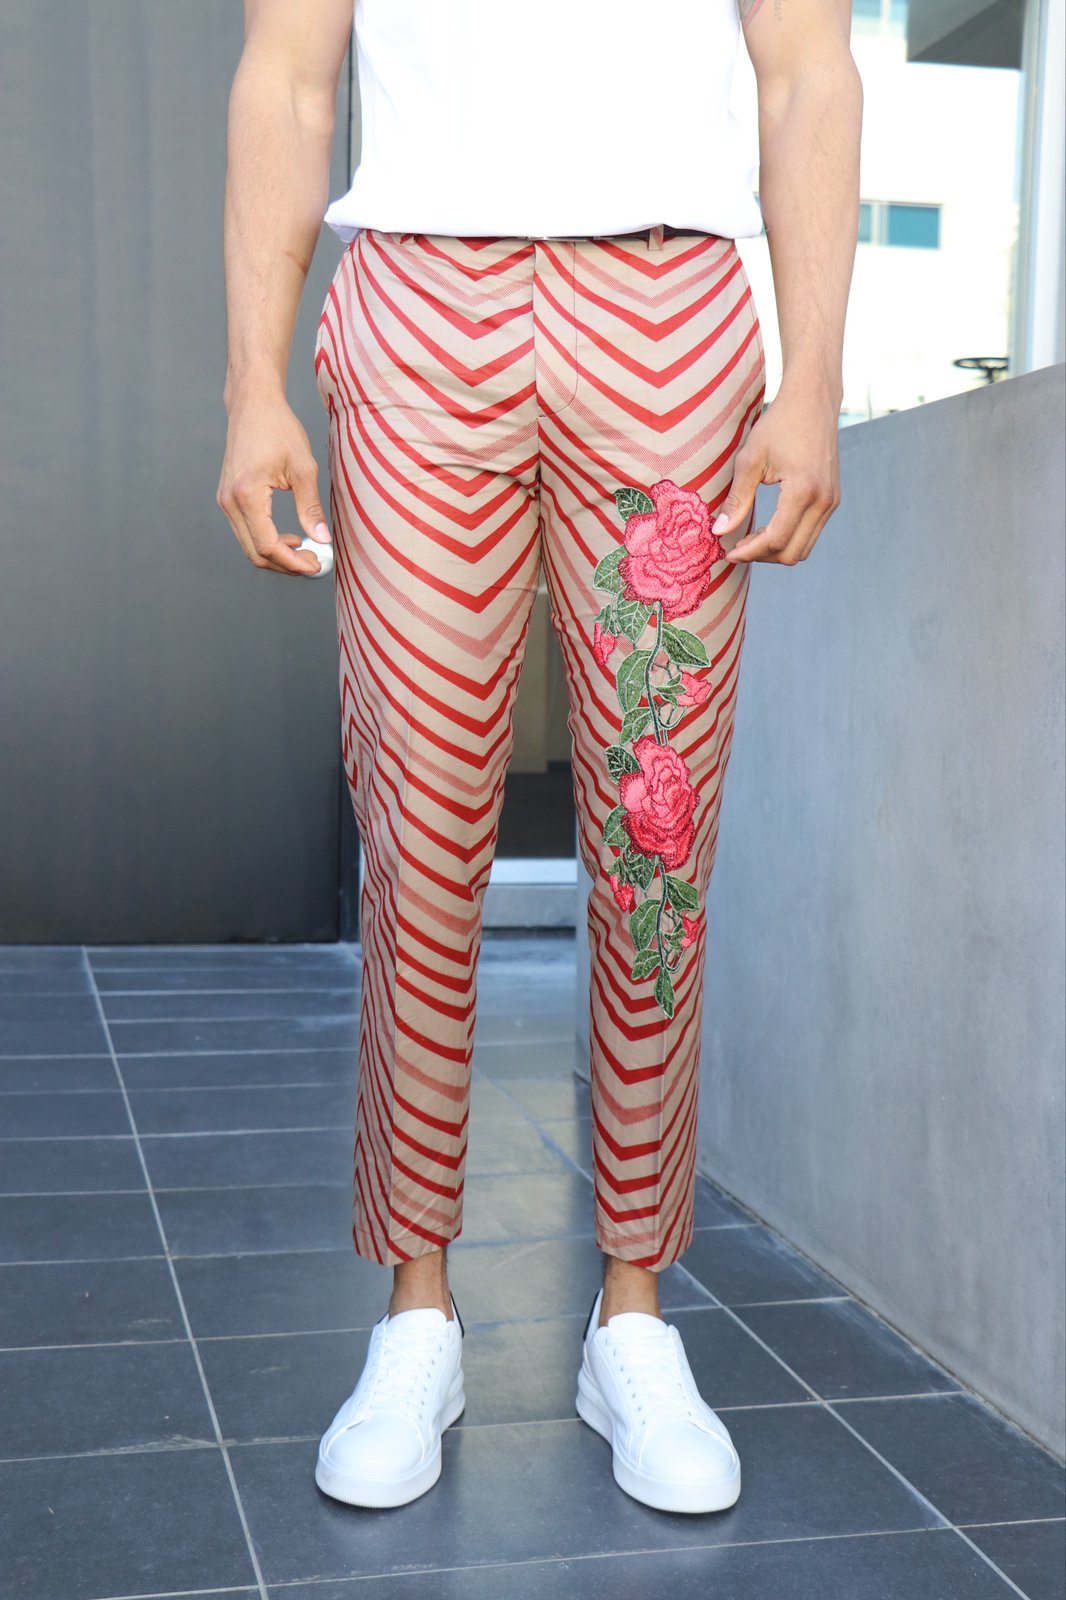 Men's Fashion Floral Pants multi Color - Etsy